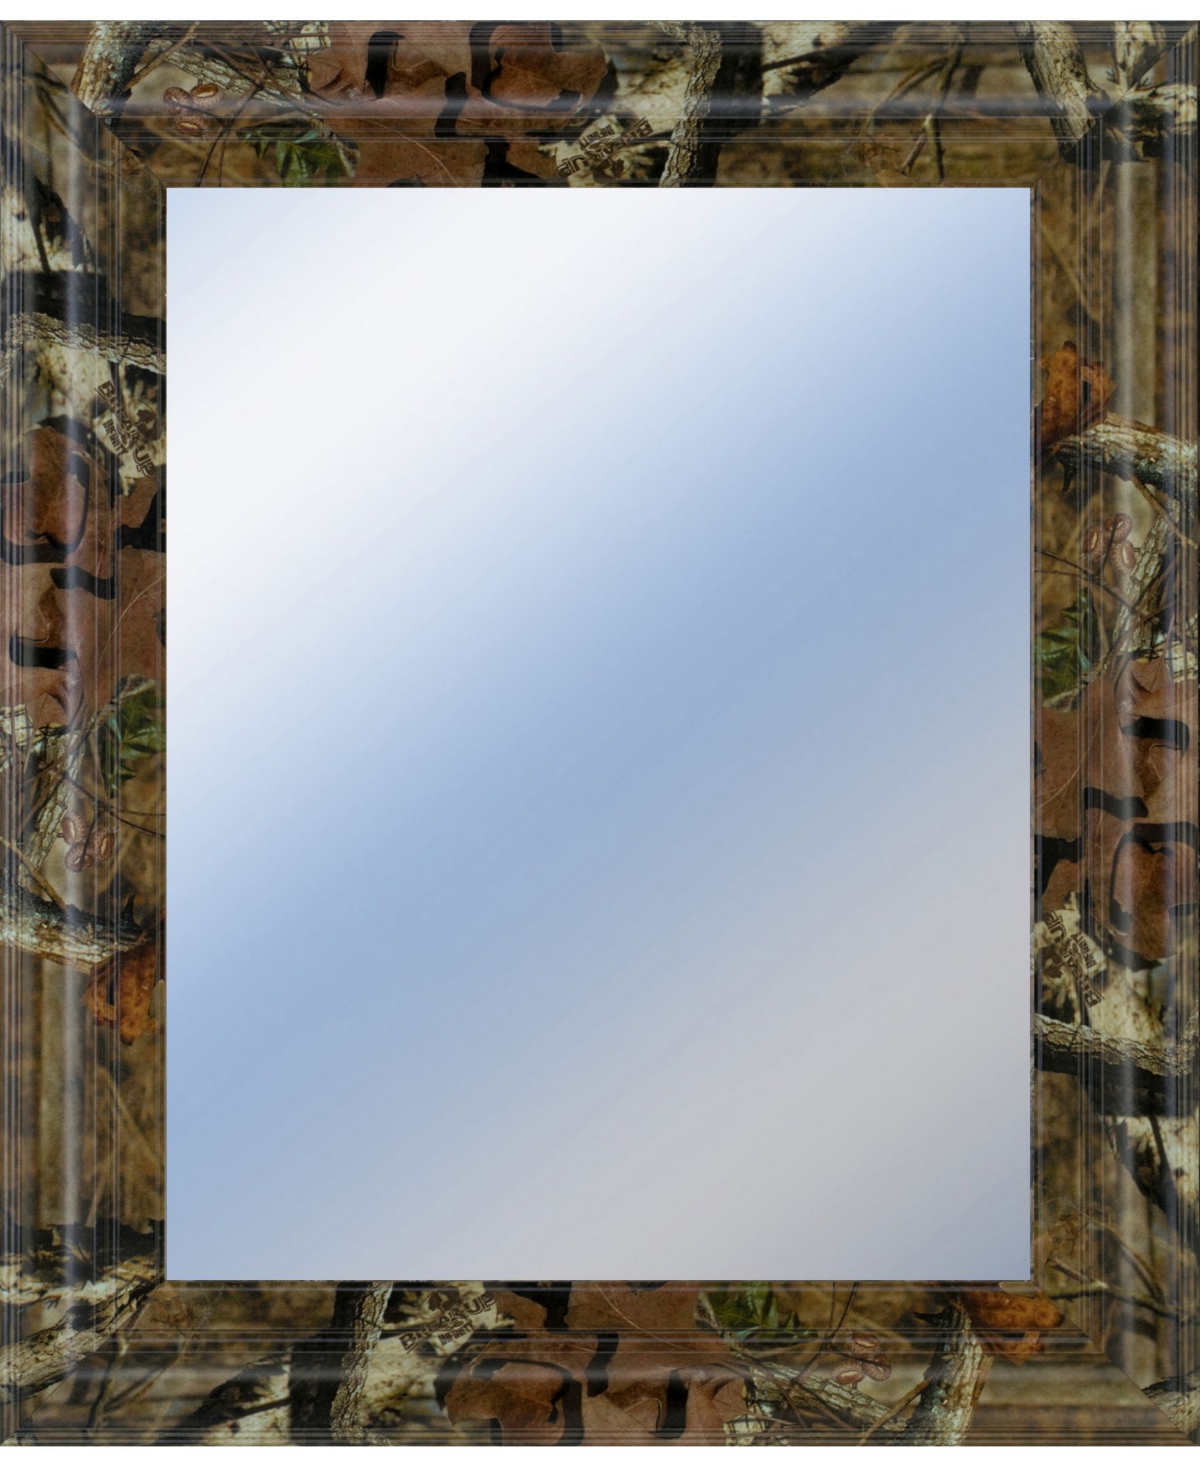 Decorative Framed Wall Mirror, 22" x 26" - Silver